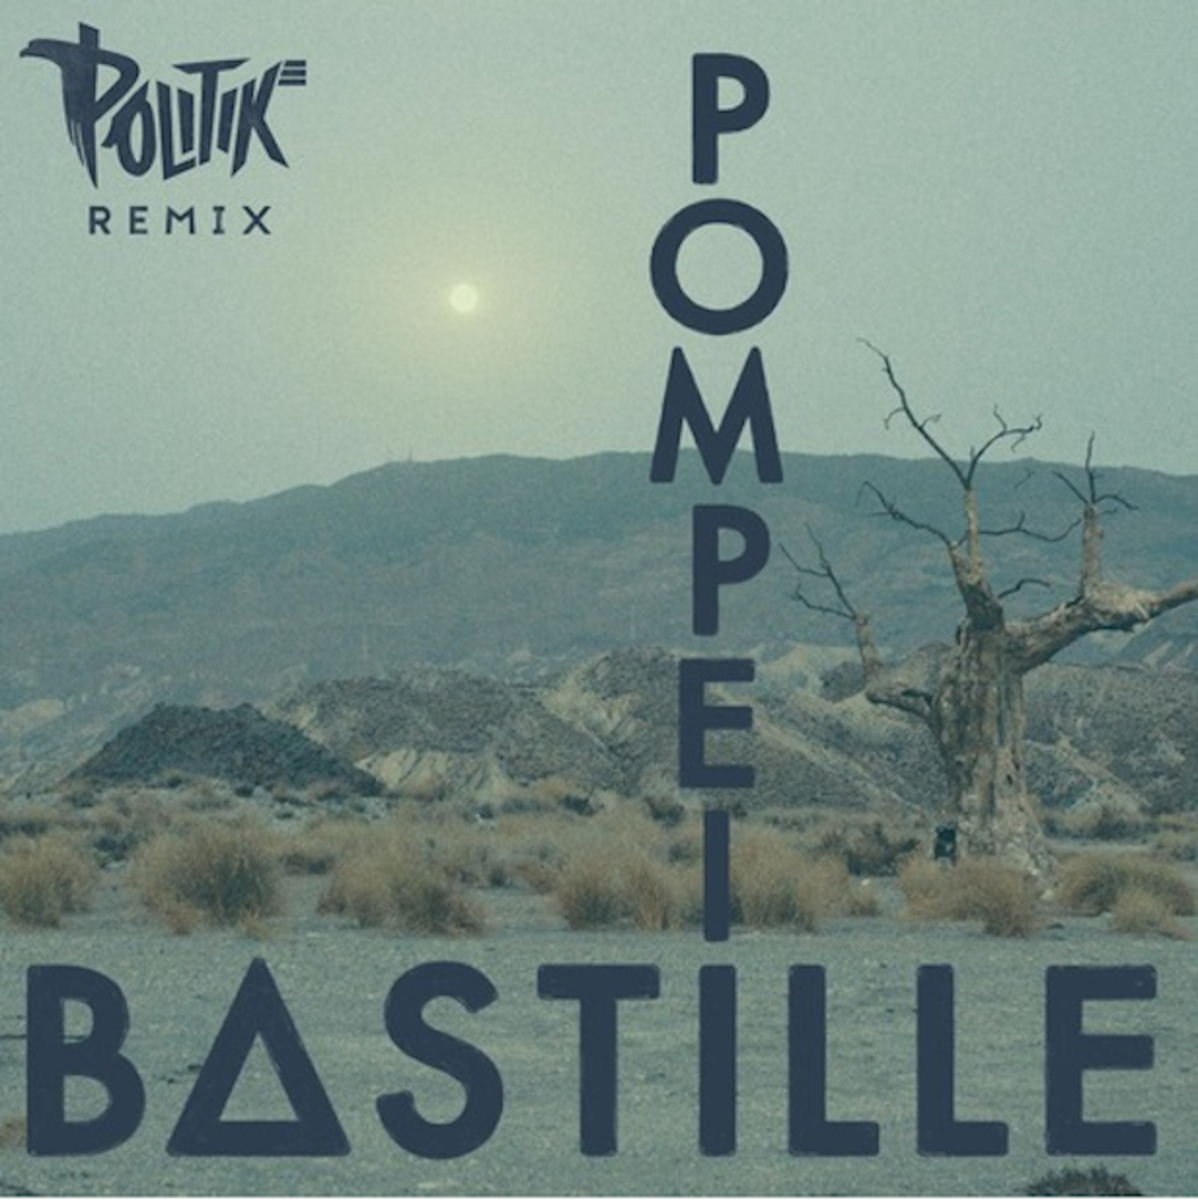 Bastille pompeii audien remix mp3 free download